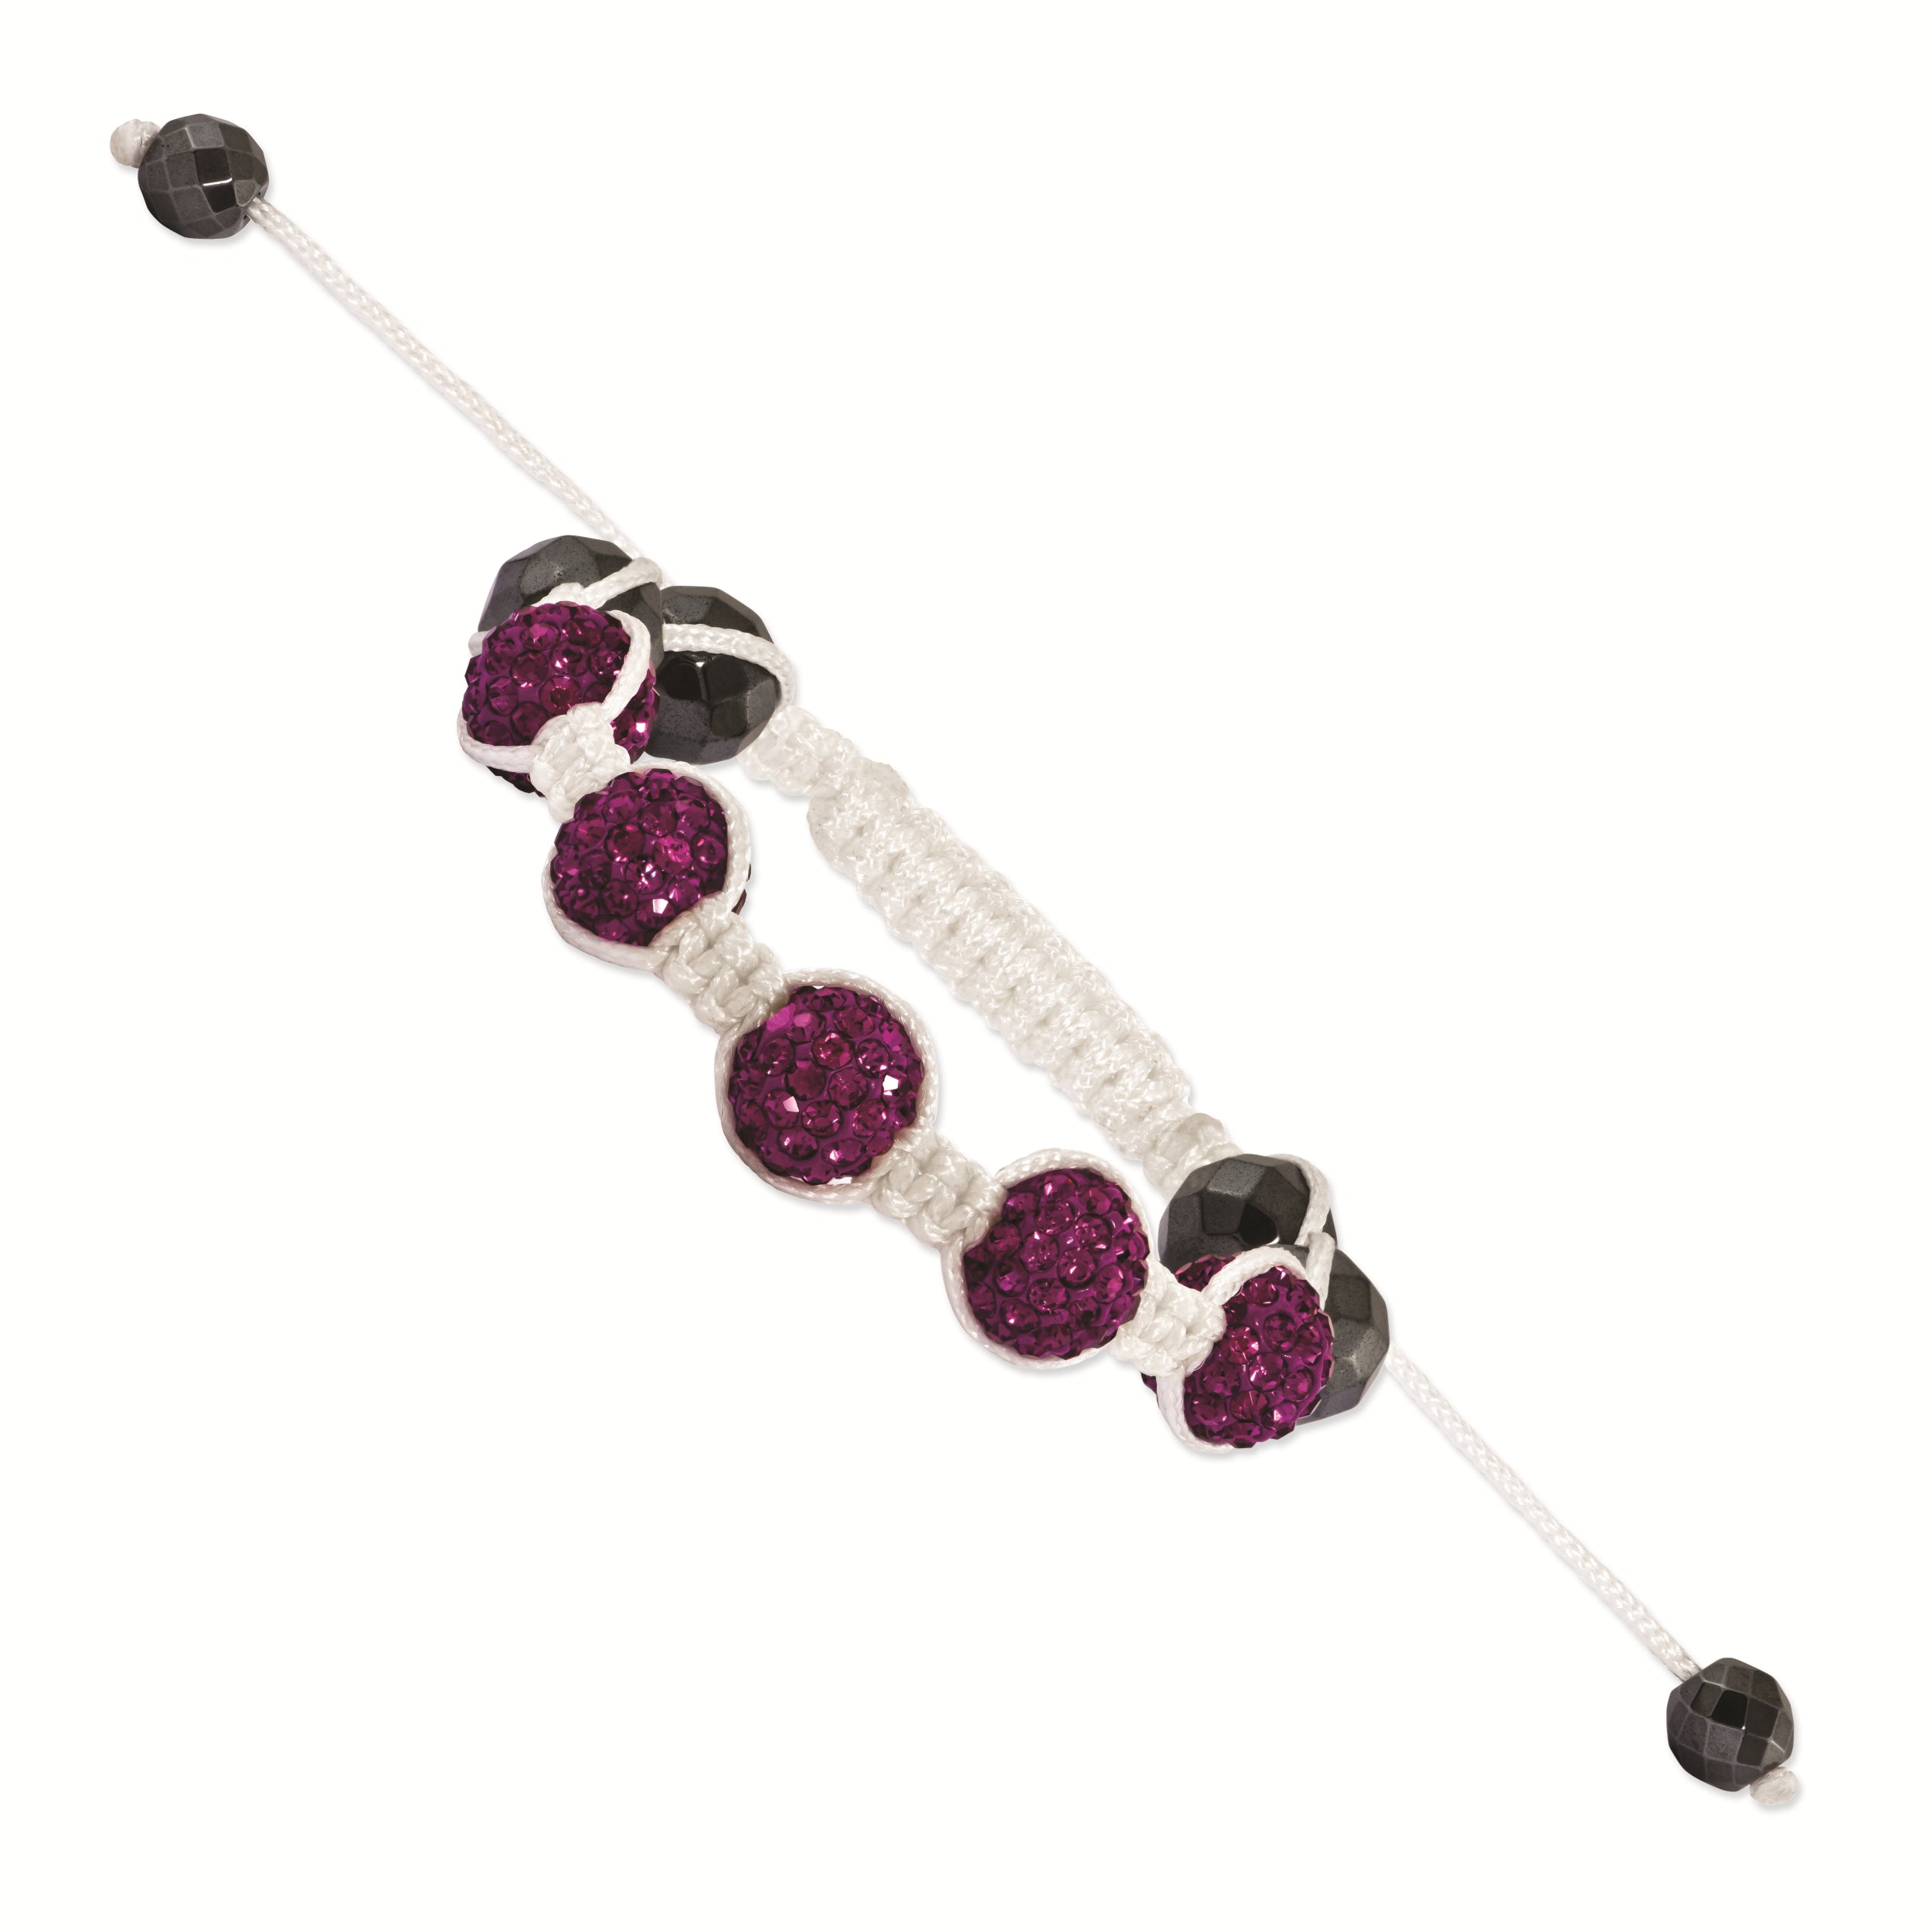 8mm Dark Pink and Hematite Beads White Cord Petite Bracelet